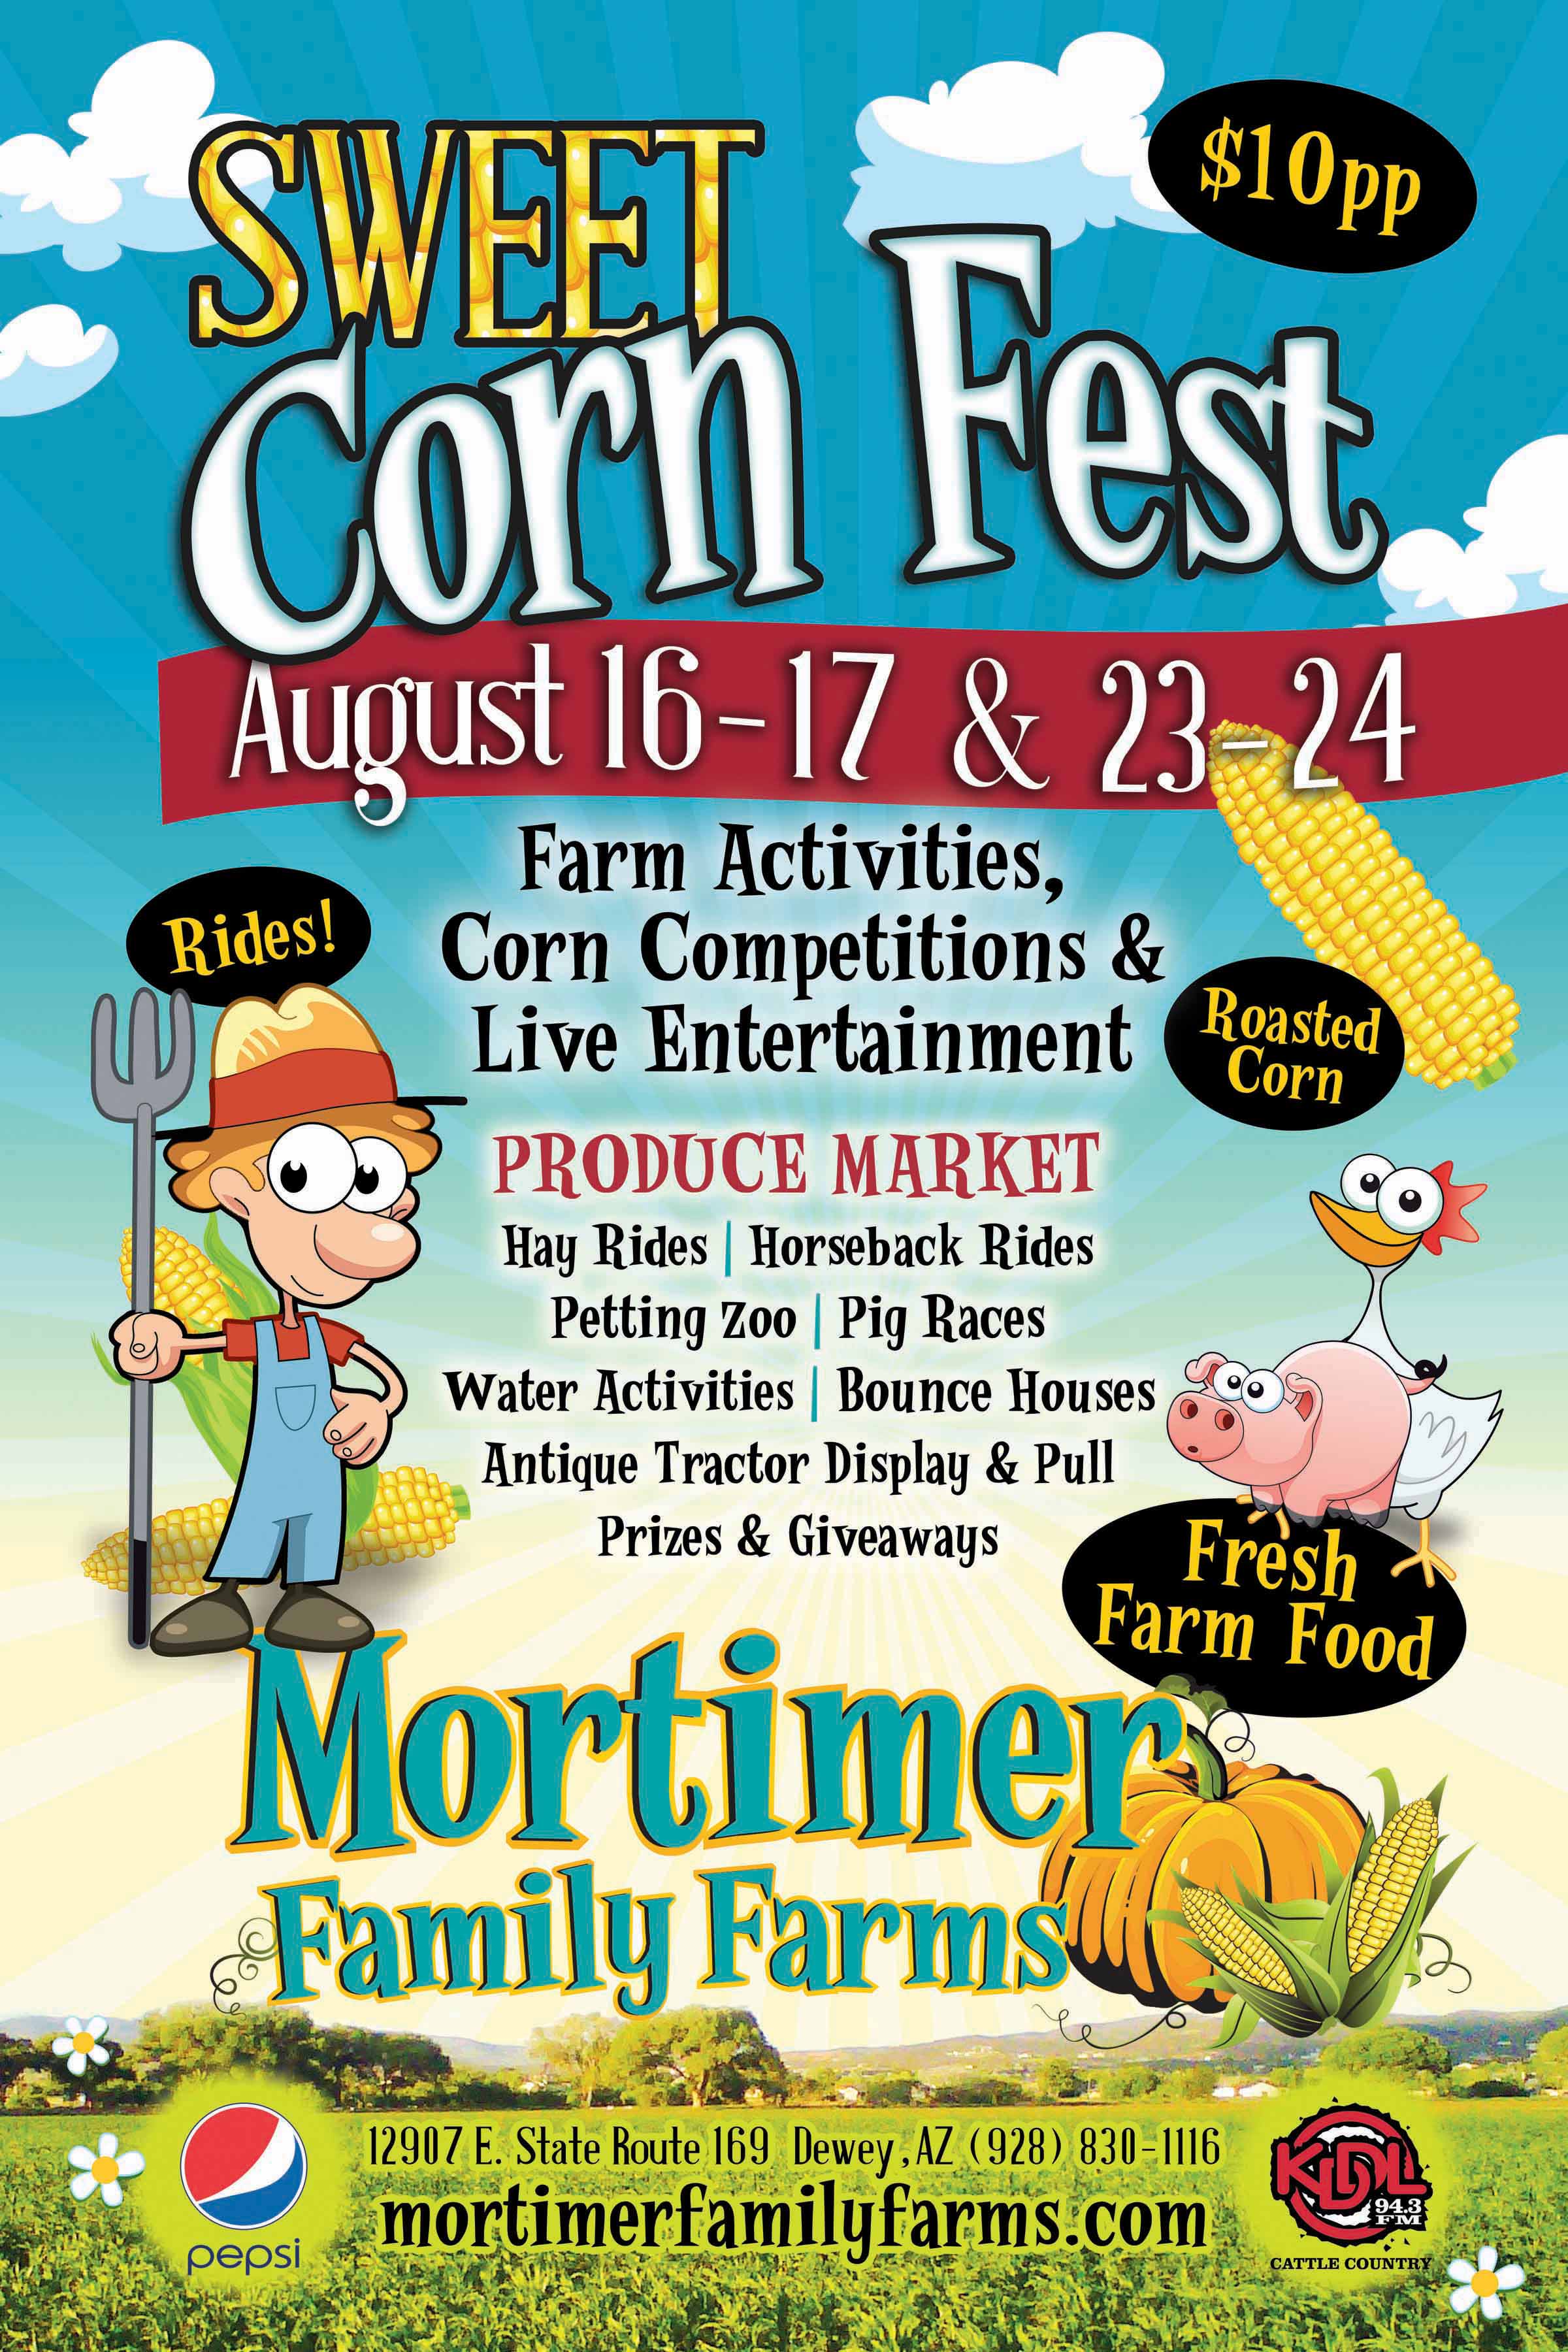 Mortimer Family Farms Sweet Corn Festival